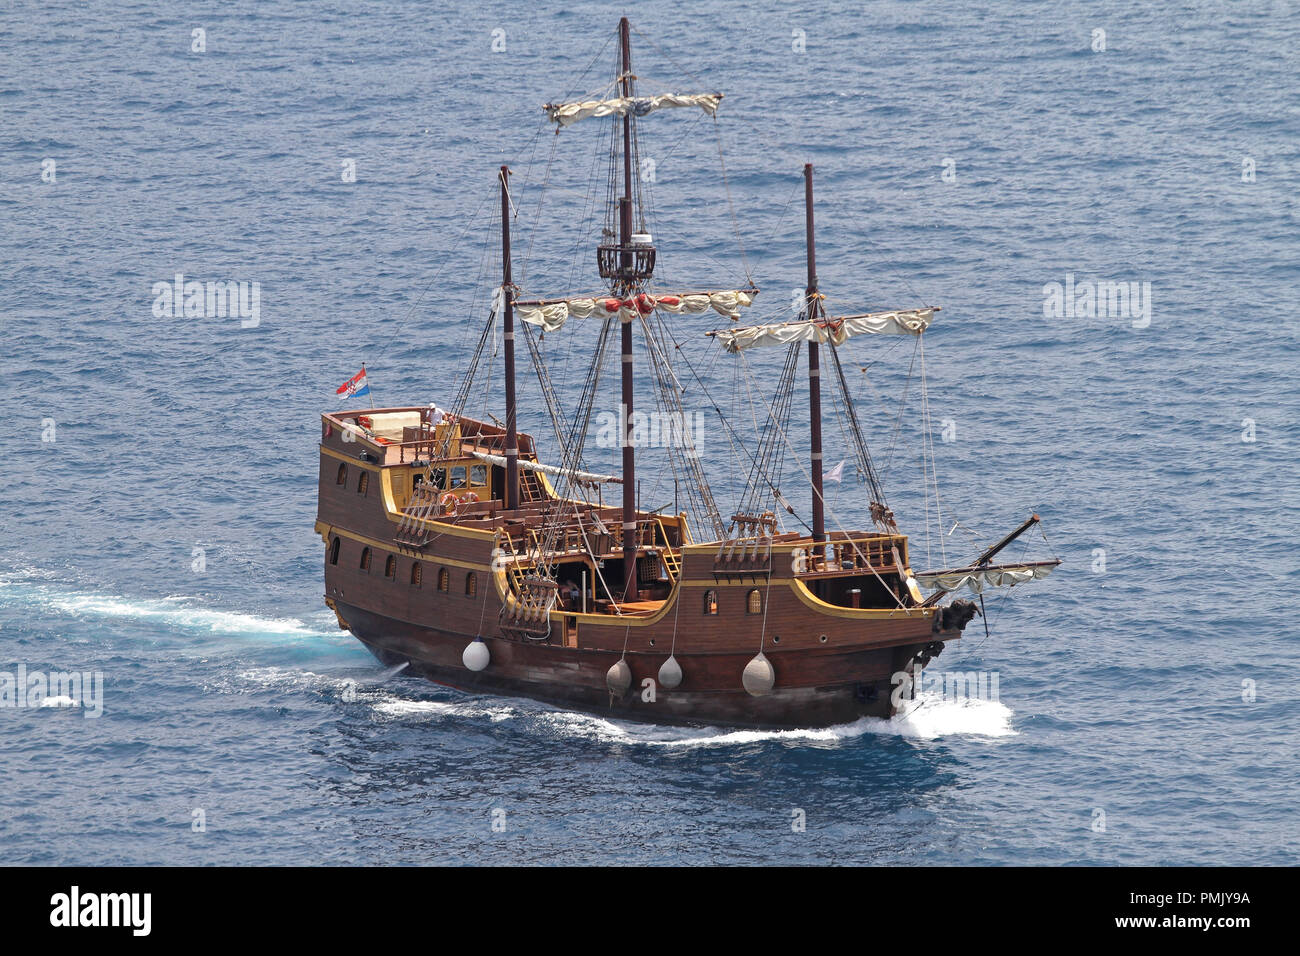 Medieval Pirate Ship Replica in Adriatic Sea Stock Photo